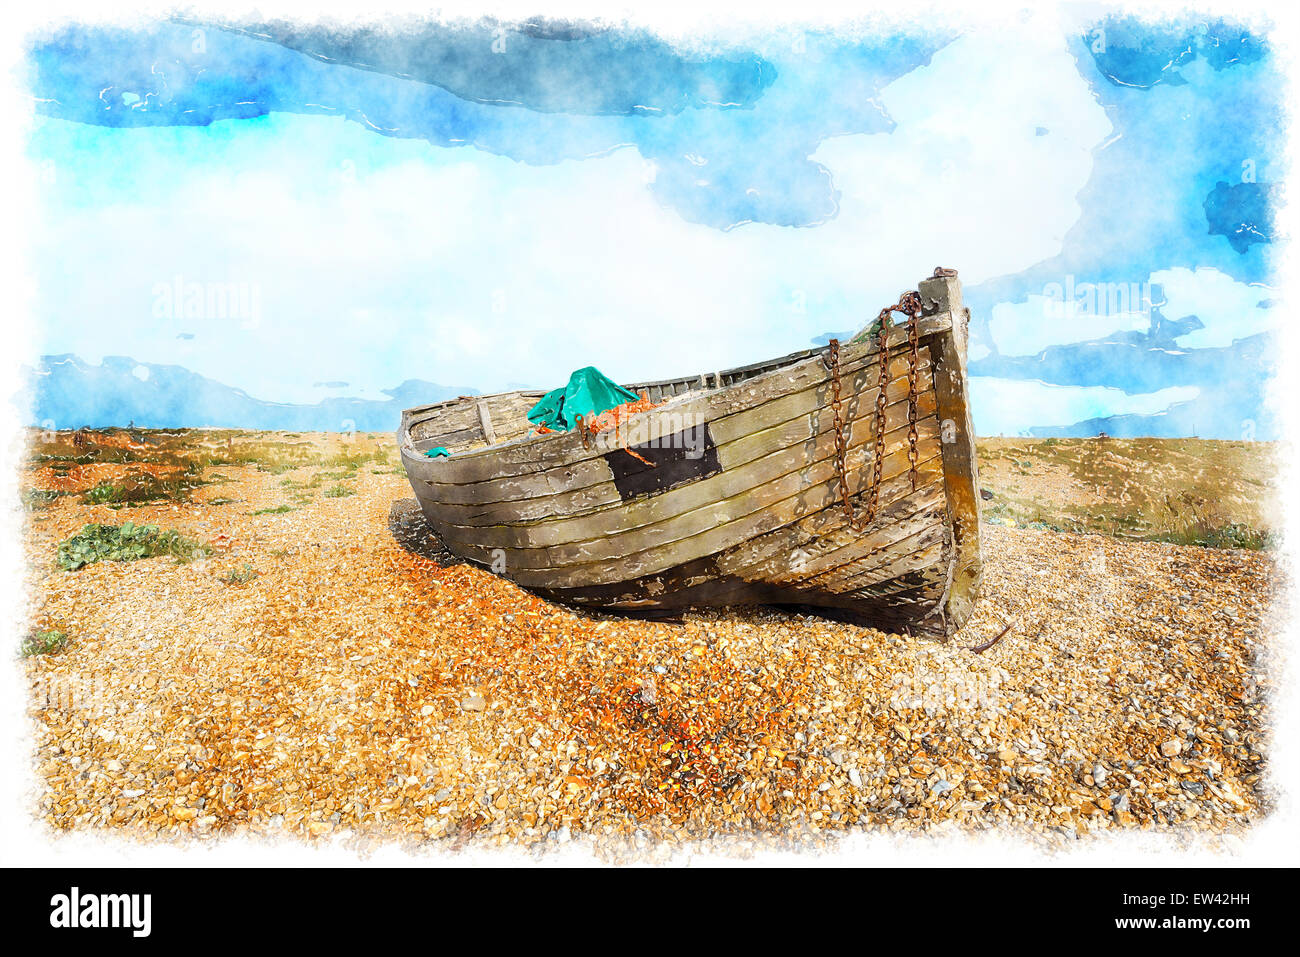 La pittura ad acquerello di un vecchio legno stagionato barche da pesca sulla spiaggia di ghiaia sotto un cielo blu Foto Stock